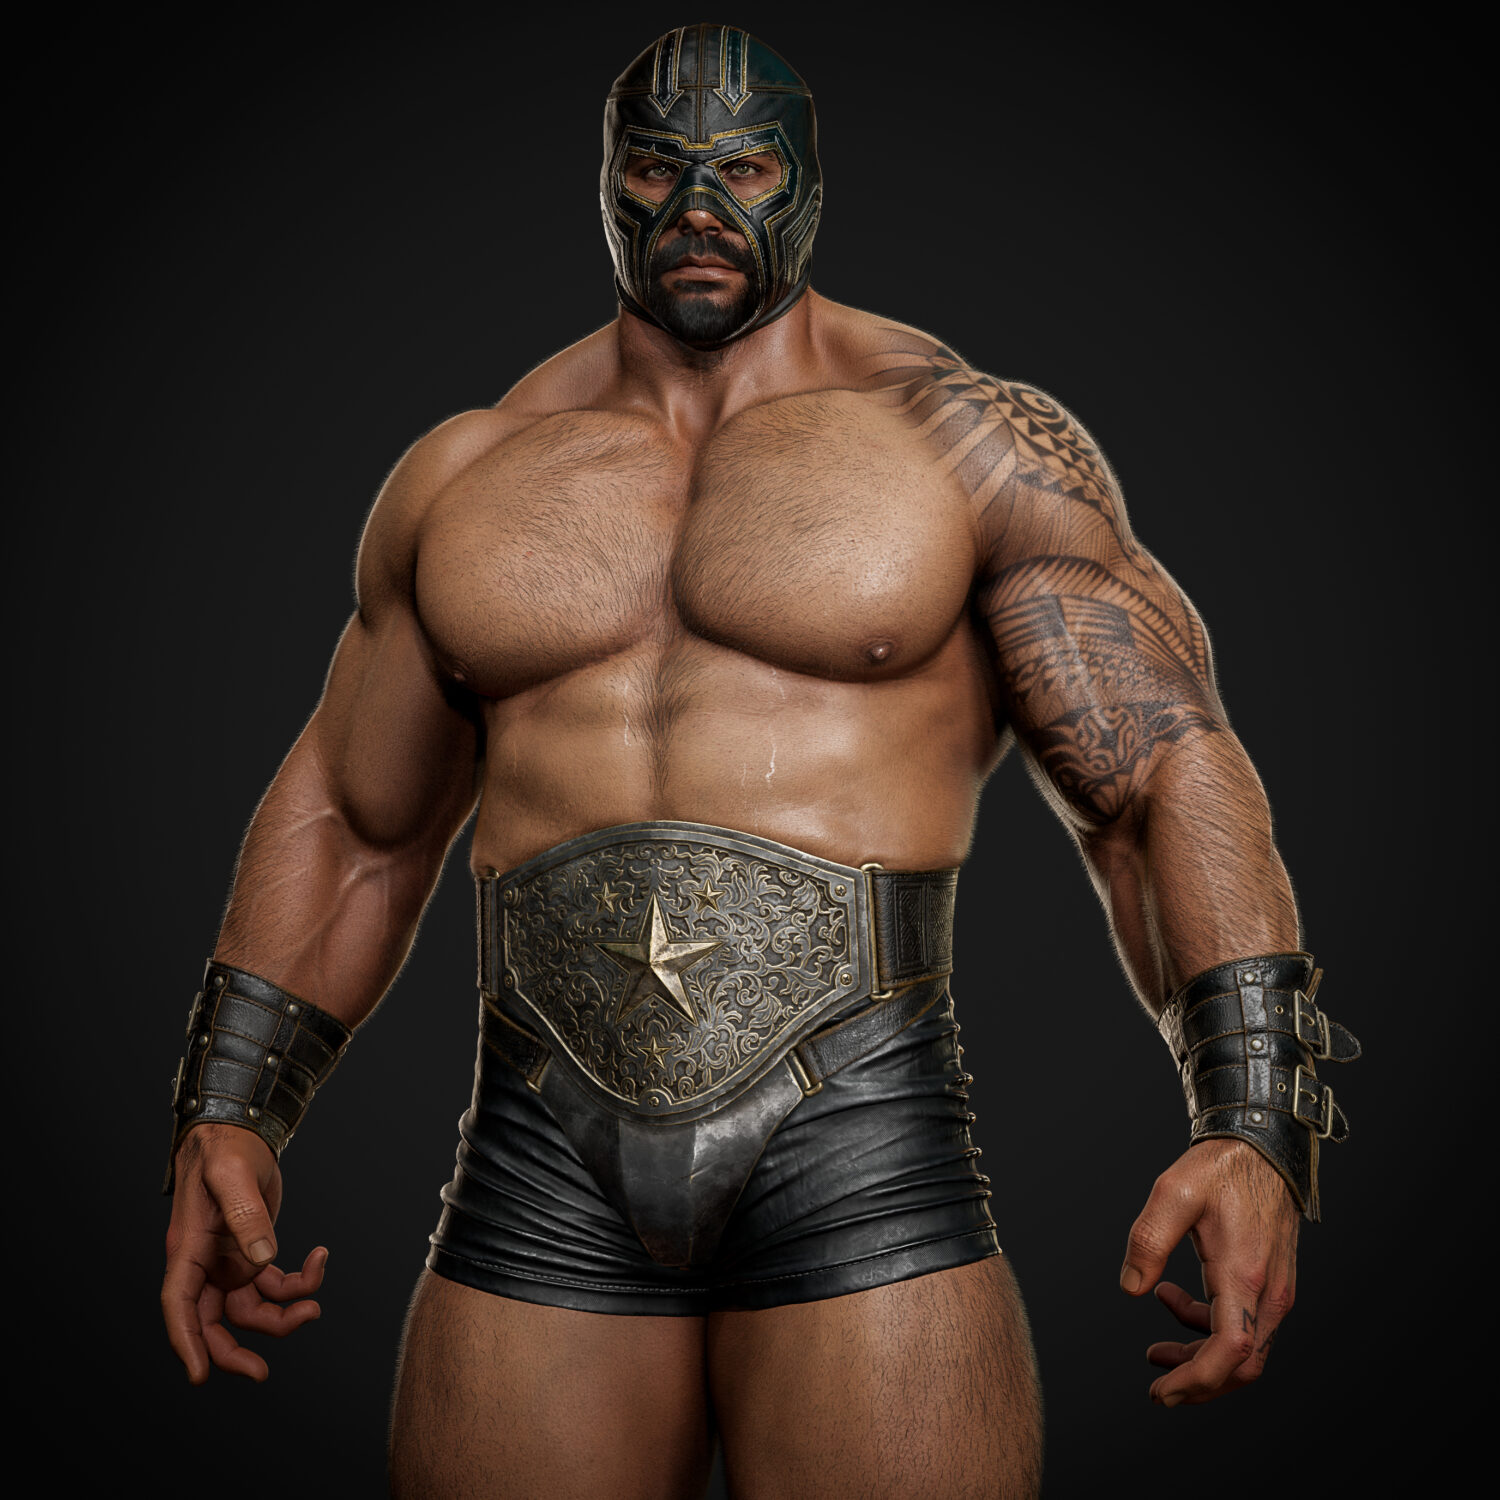 Wrestler (Lucha Underground) Wrestlers Wrestlers